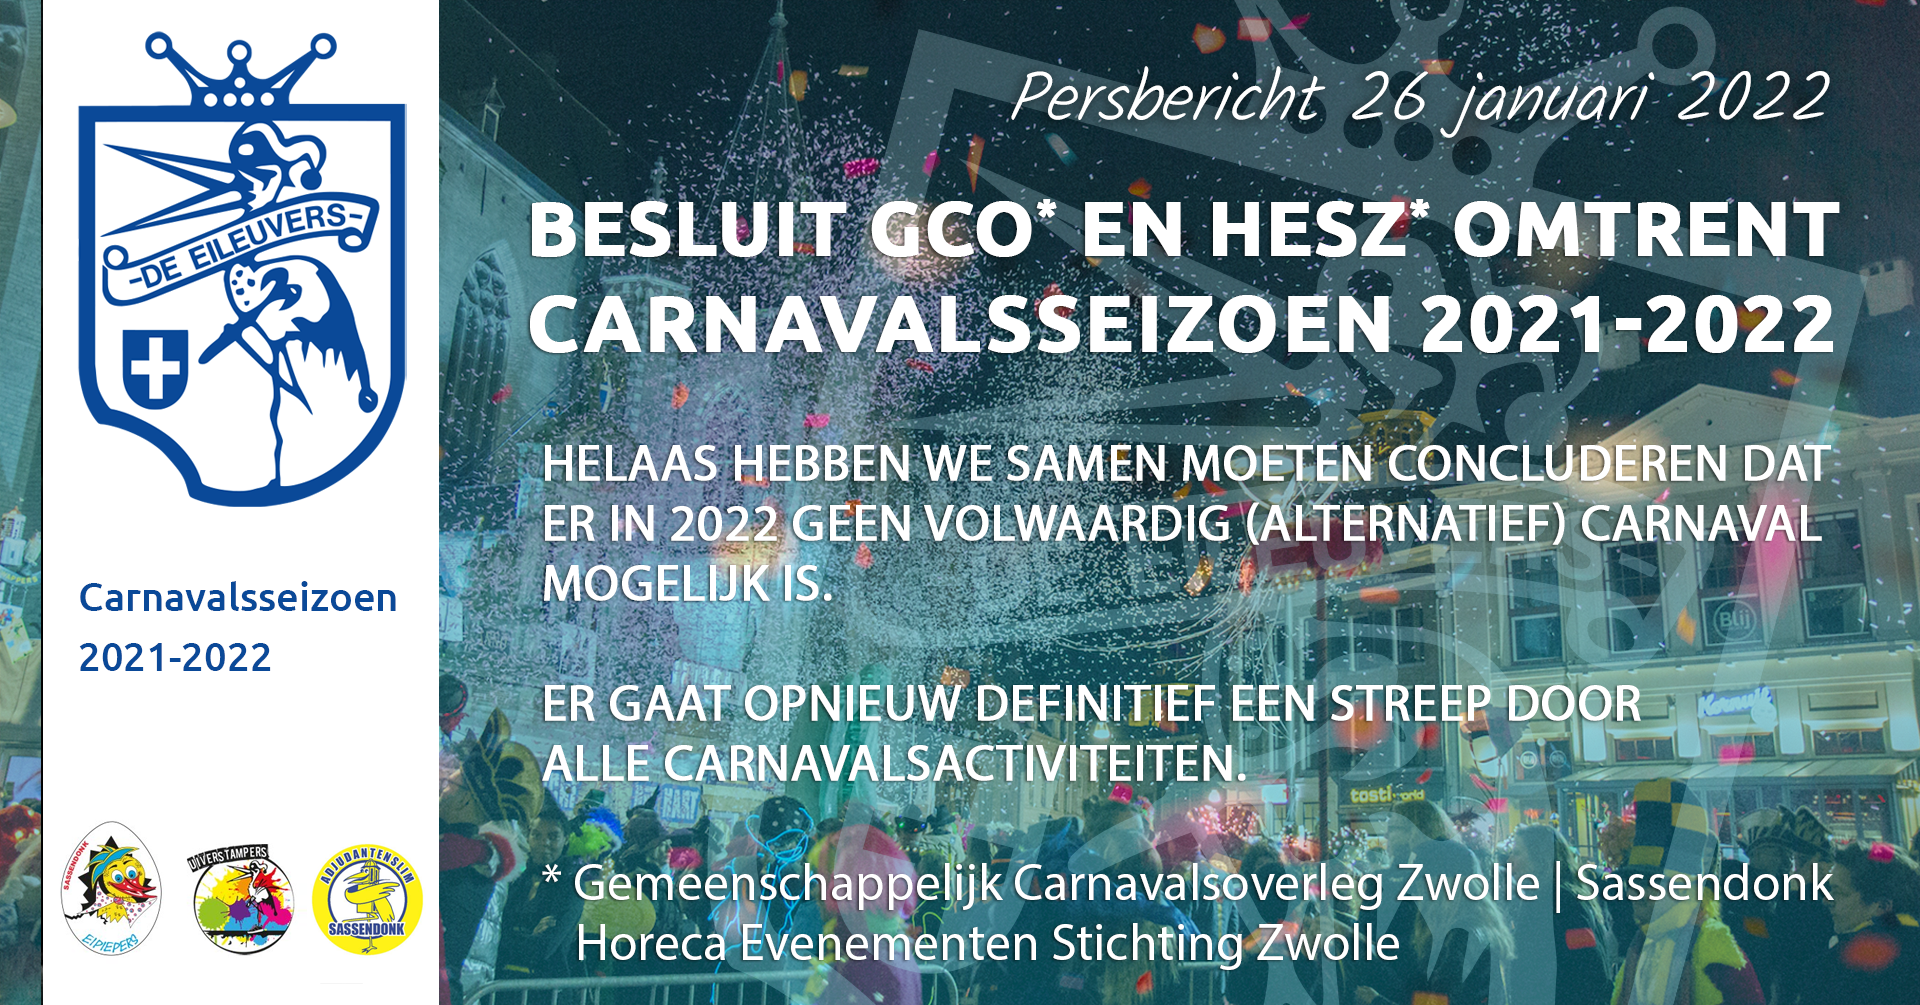 Persbericht Gemeenschappelijk Carnavalsoverleg (GCO) Zwolle